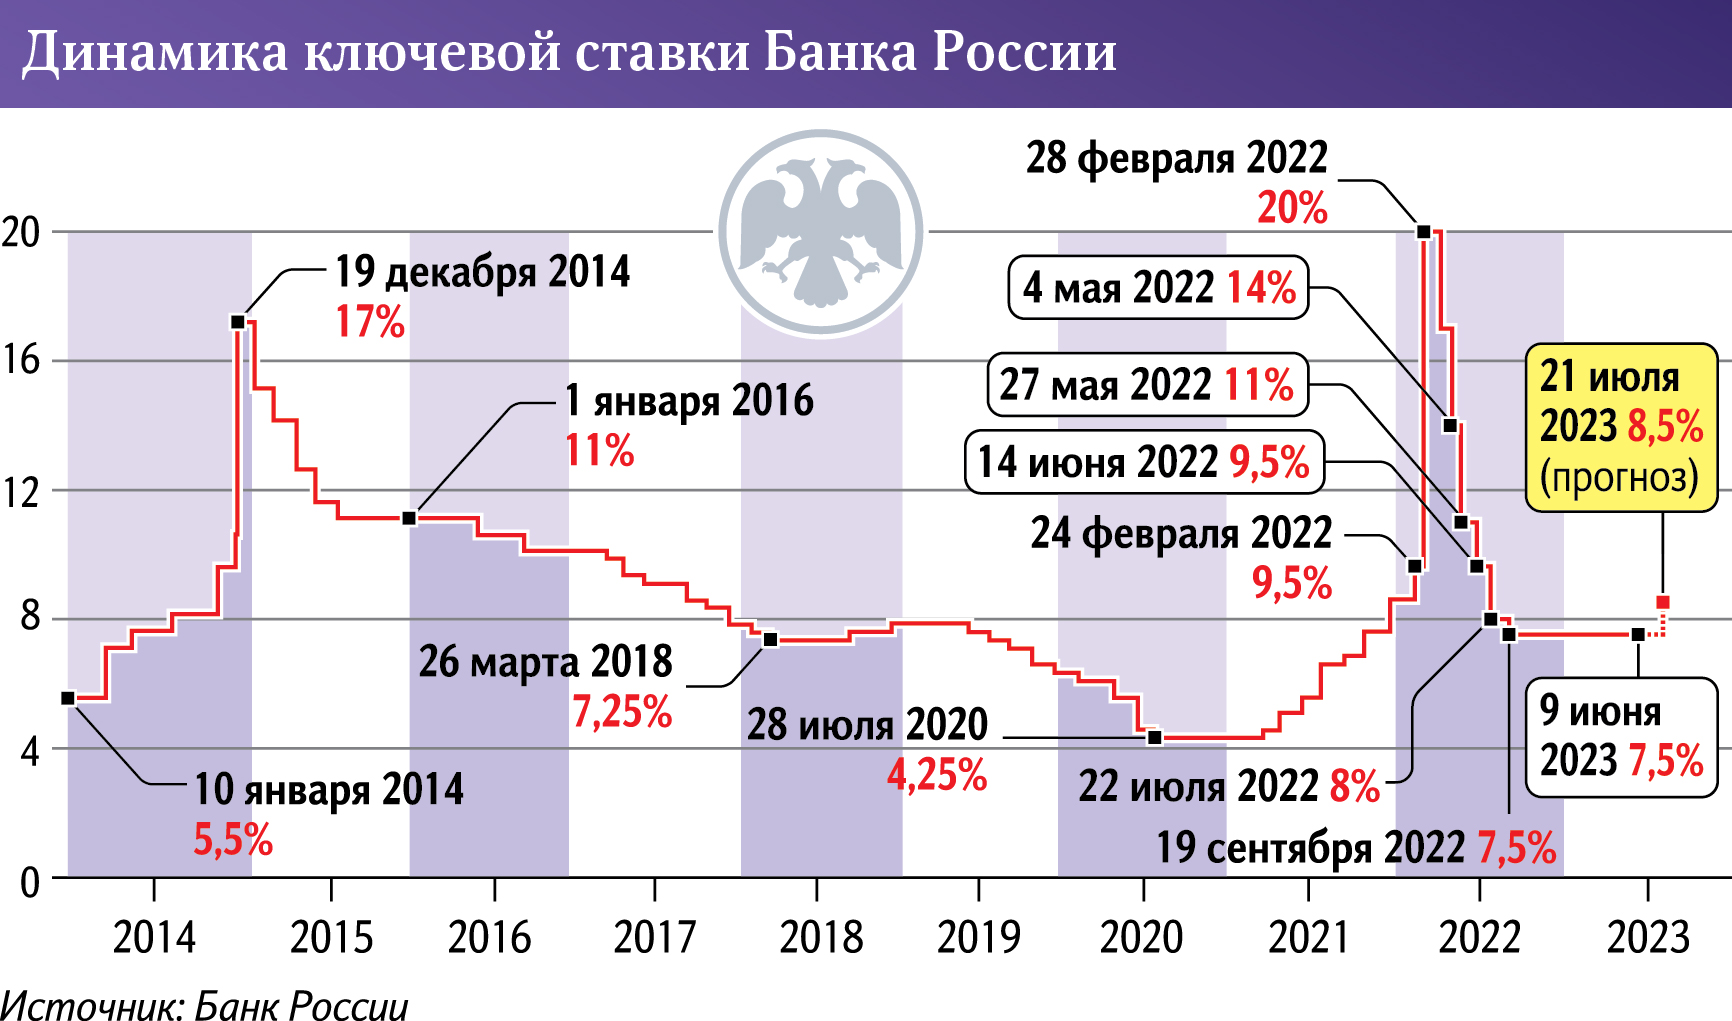 Объем производства мебели в россии 2020